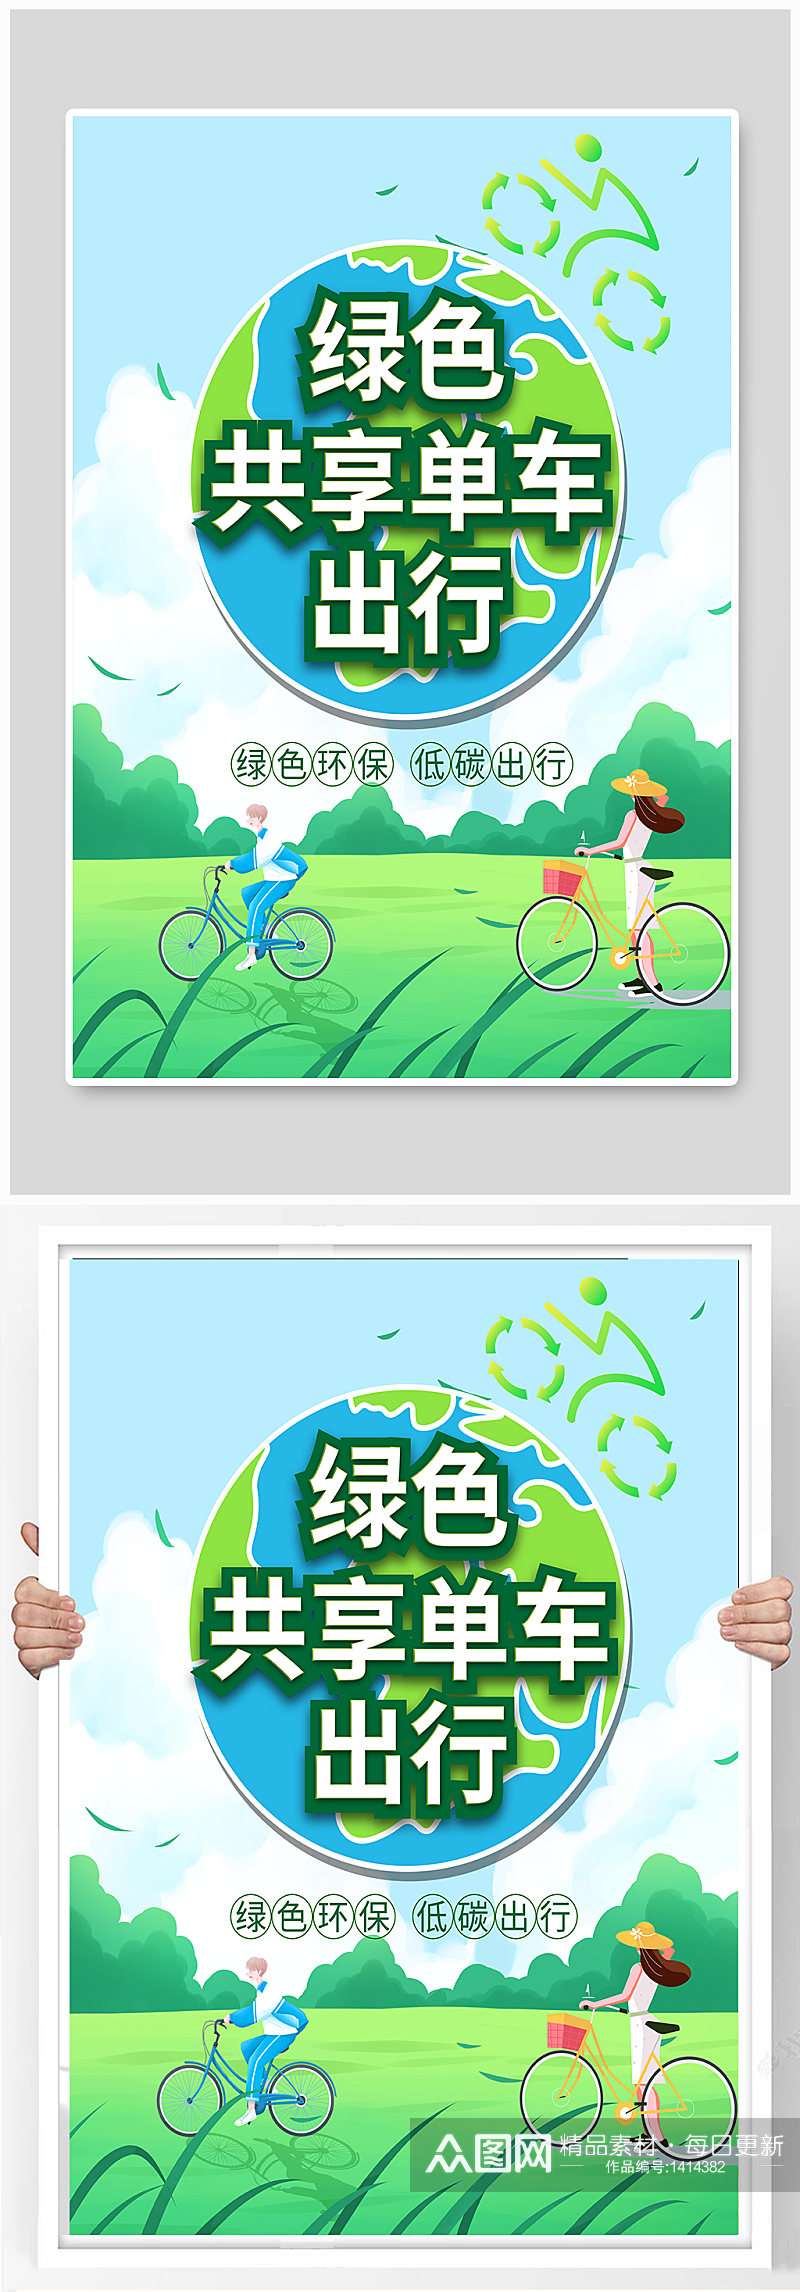 小清新共享单车绿色出行宣传海报素材